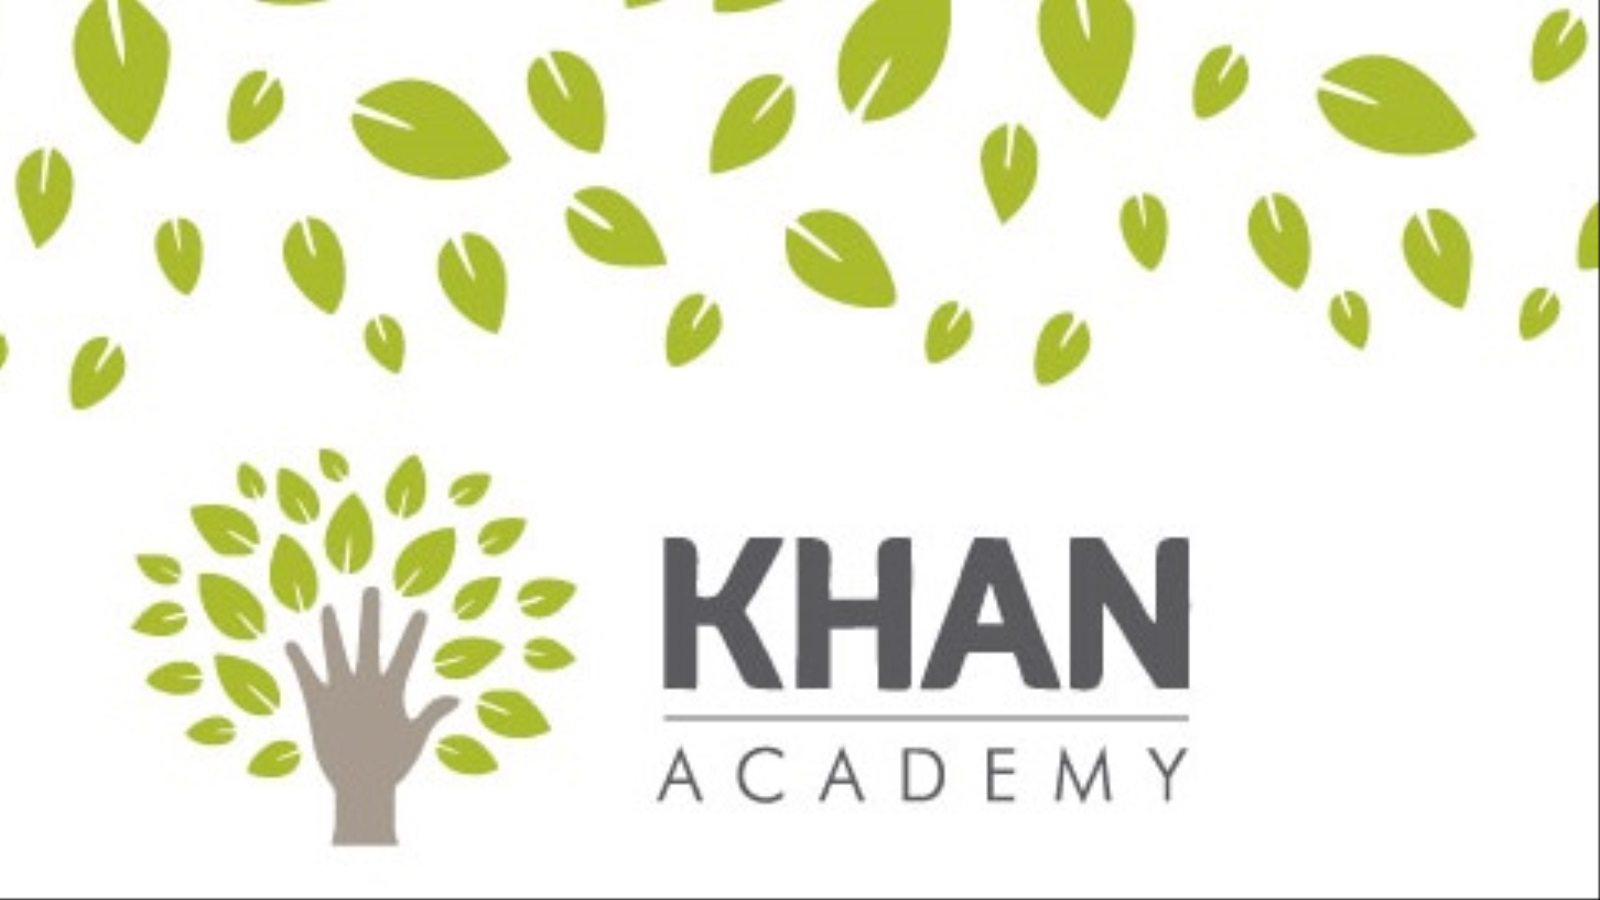 أكاديمية خان (Khan Academy) تفتقر إلى اللغة العربية حيث أنها متاحة بعشرين لغة ولكن العربية غير موجودة بينهم!